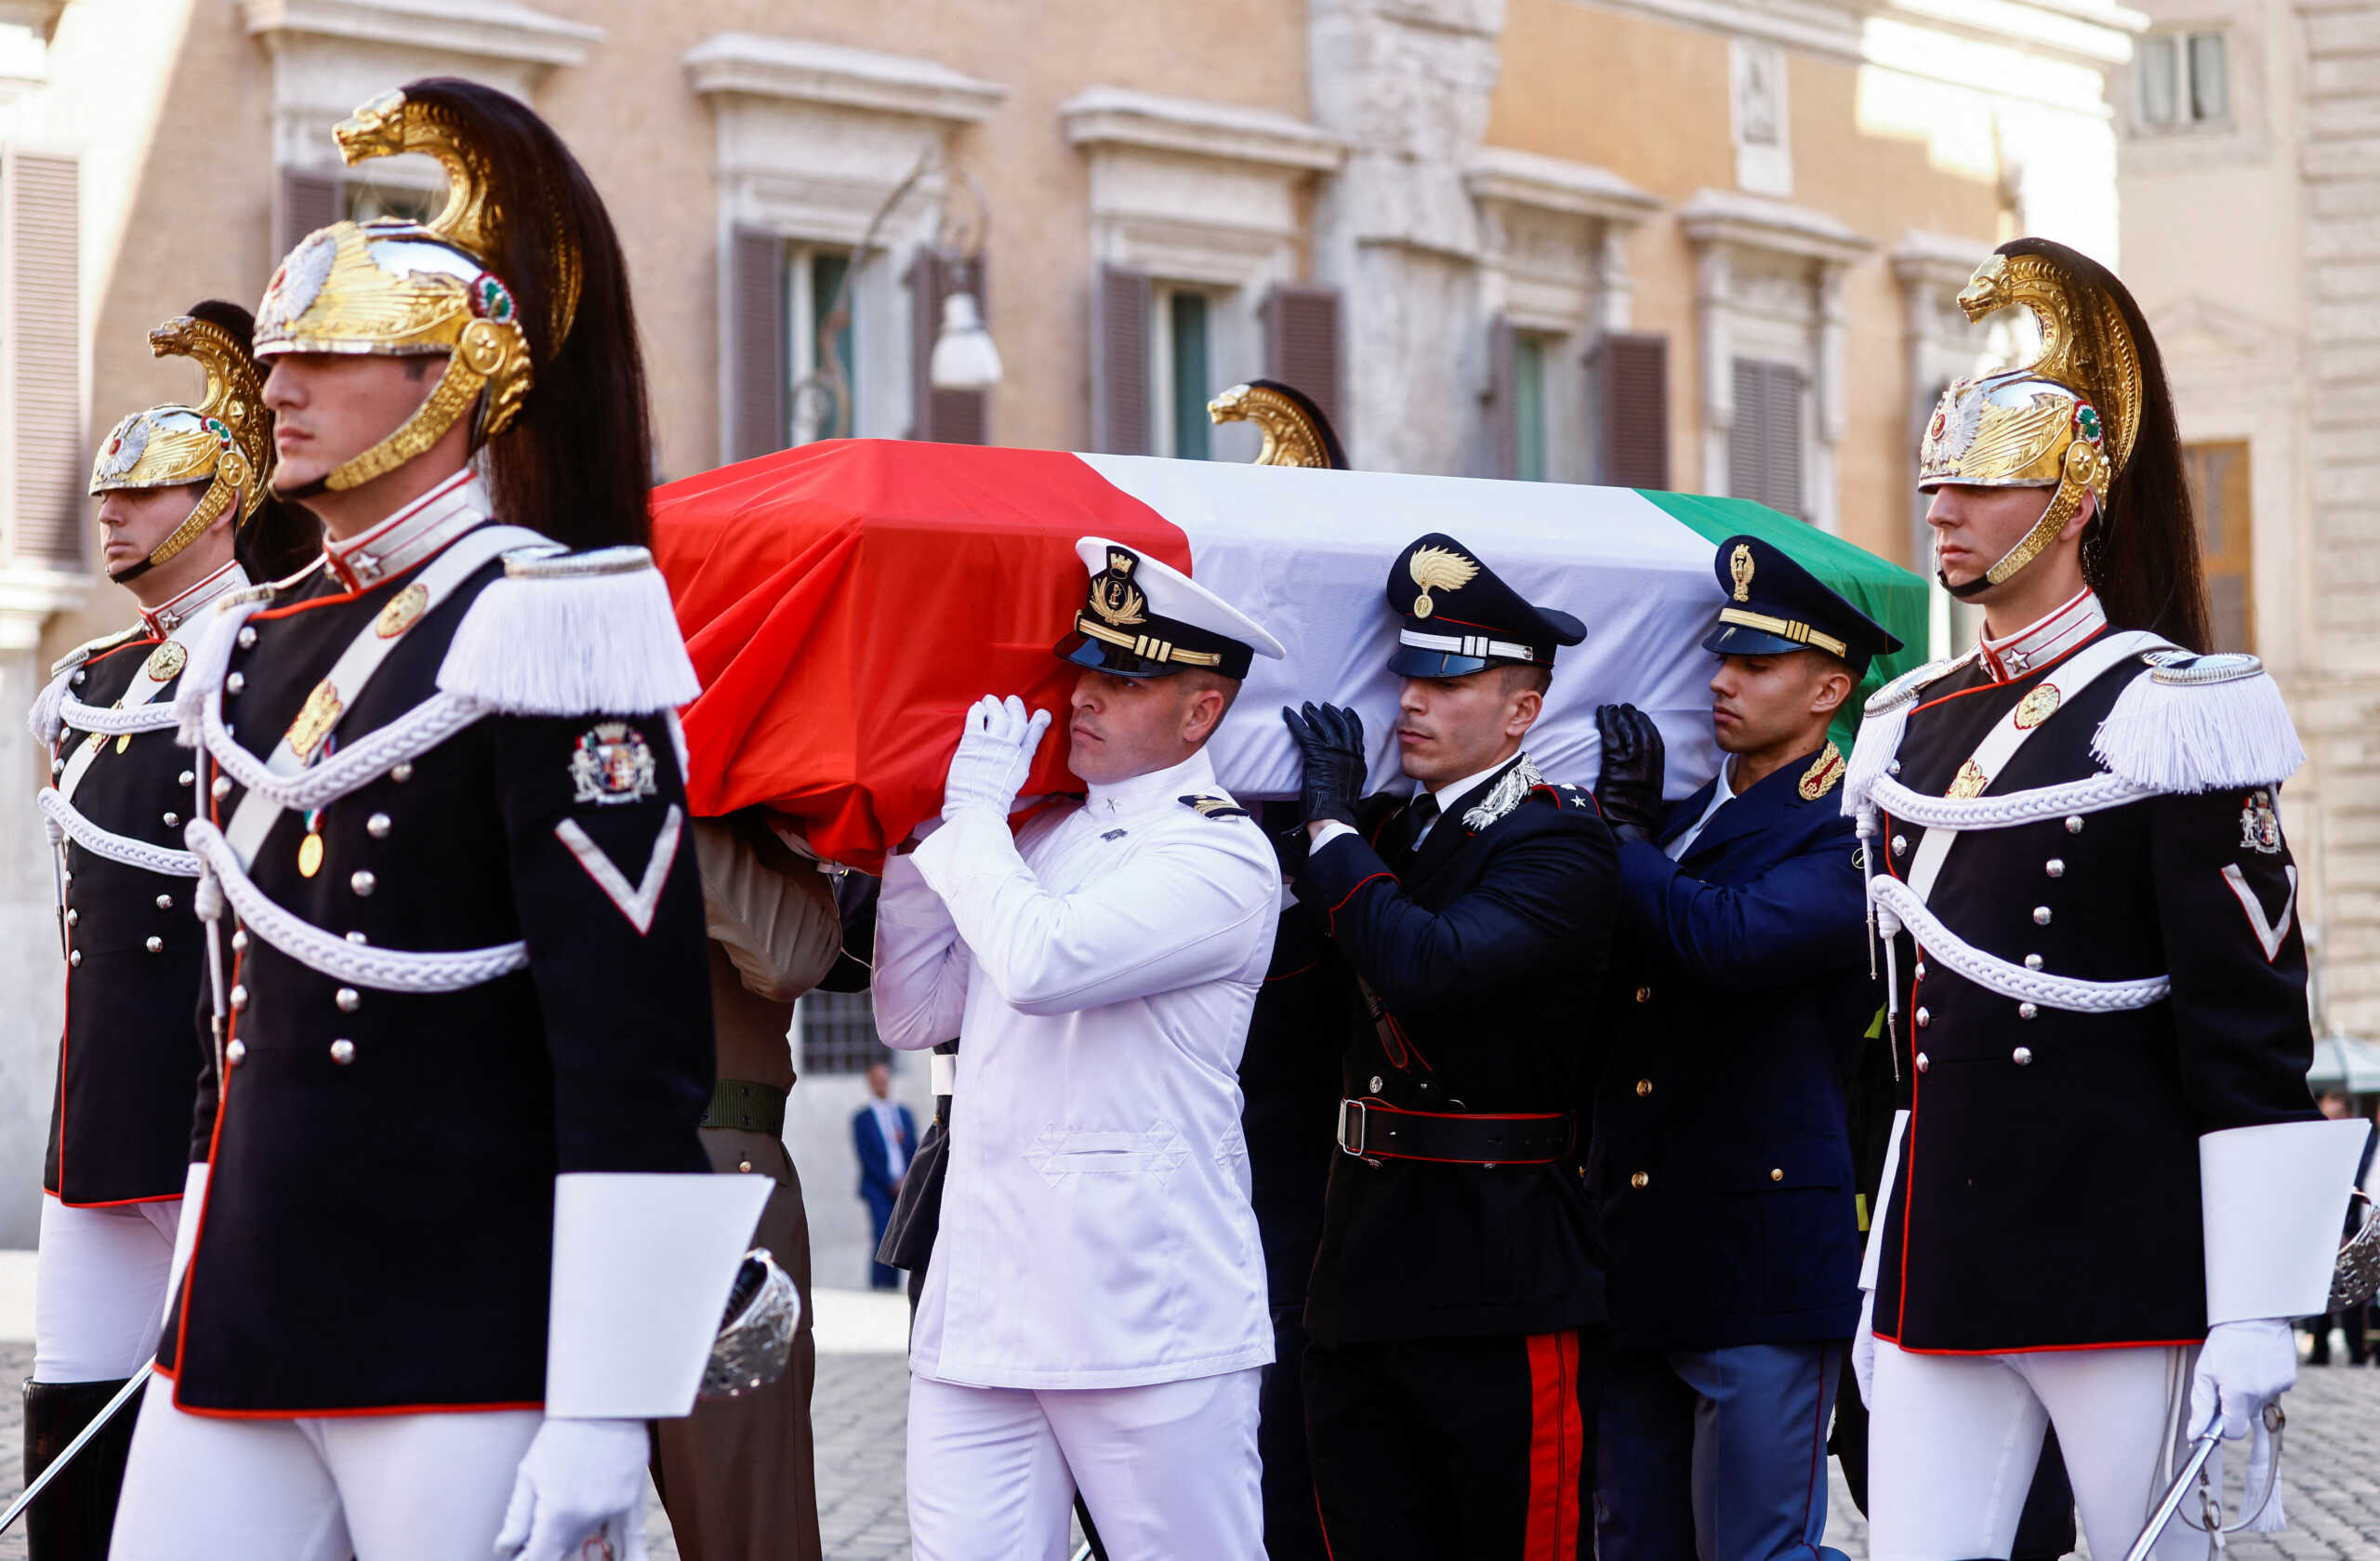 Μακρόν και Ολάντ στην πολιτική κηδεία του Ιταλού πρώην Προέδρου Τζόρτζιο Ναπολιτάνο